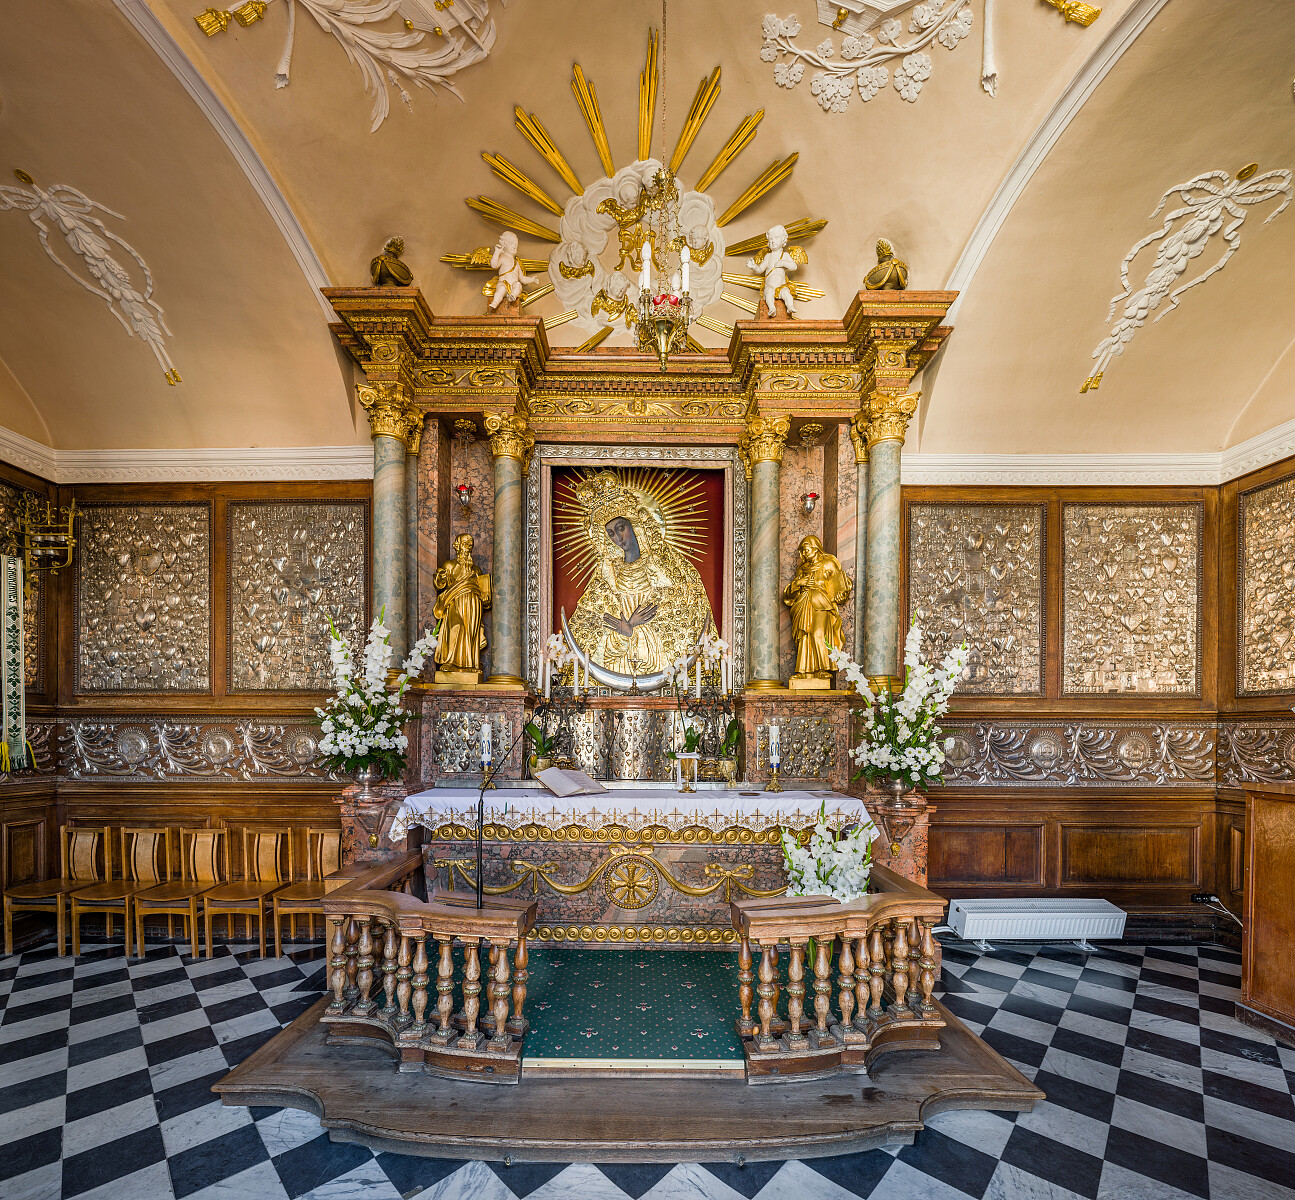 Kaplica Matki Bożej Miłosierdzia w Ostrej Bramie w Wilnie - Diliff, CC BY-SA 3.0 https://creativecommons.org, via Wikimedia Commons